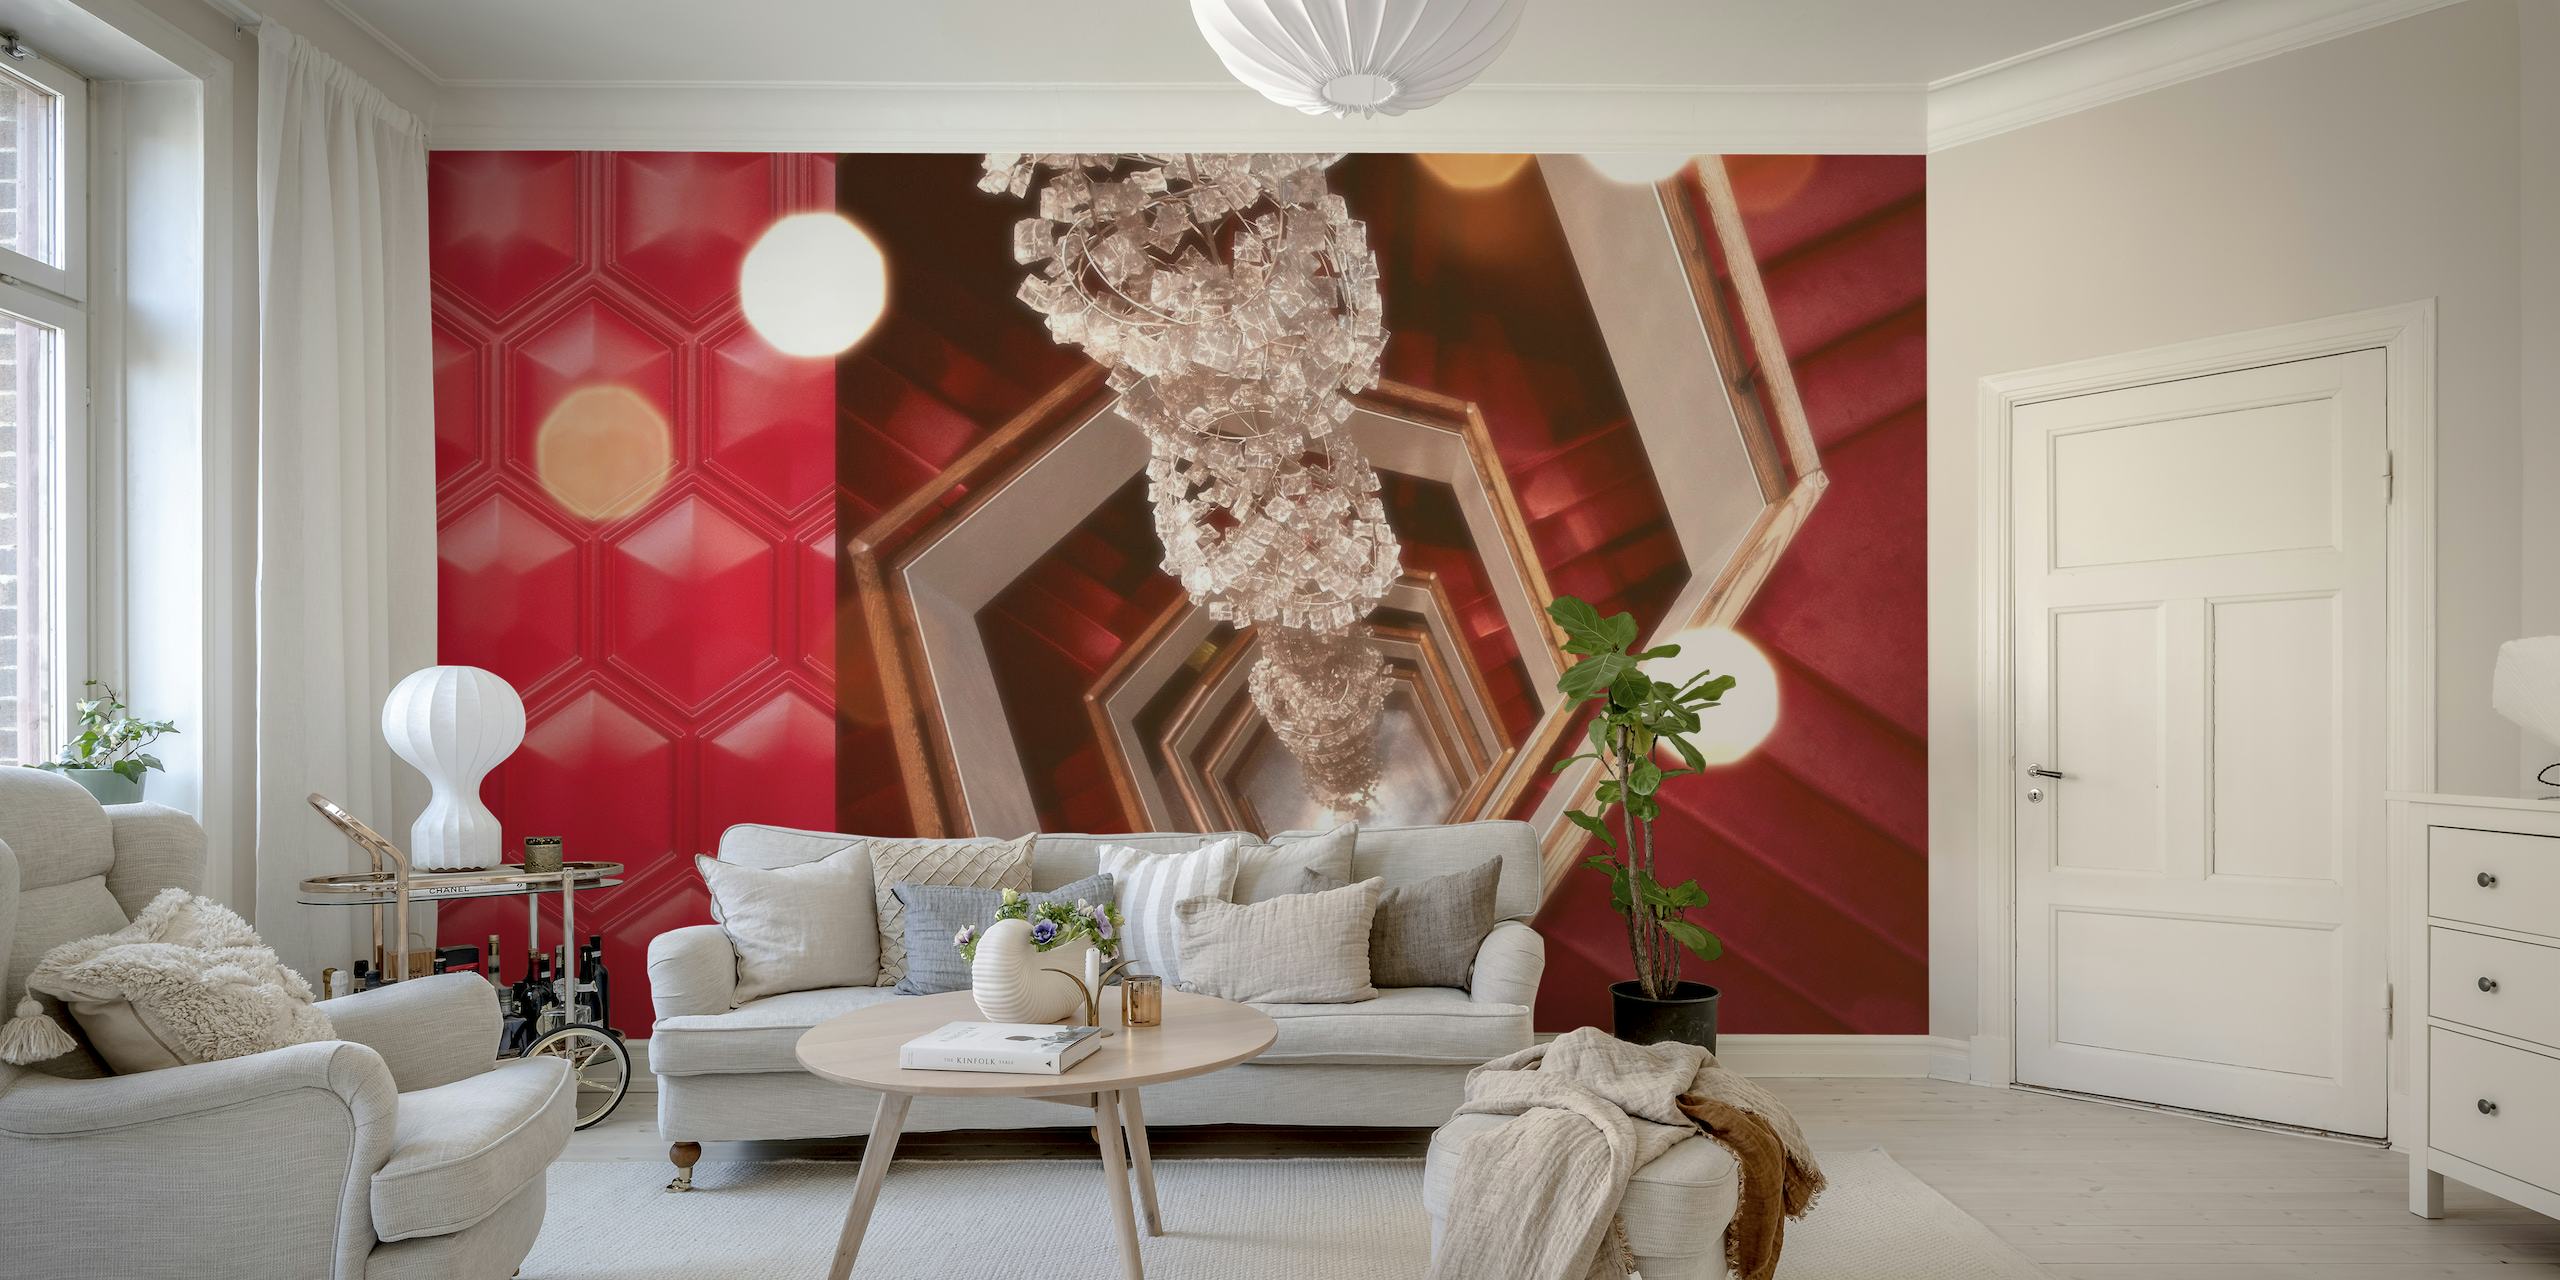 Araña vintage y patrones geométricos en un mural inspirado en una sala de cine